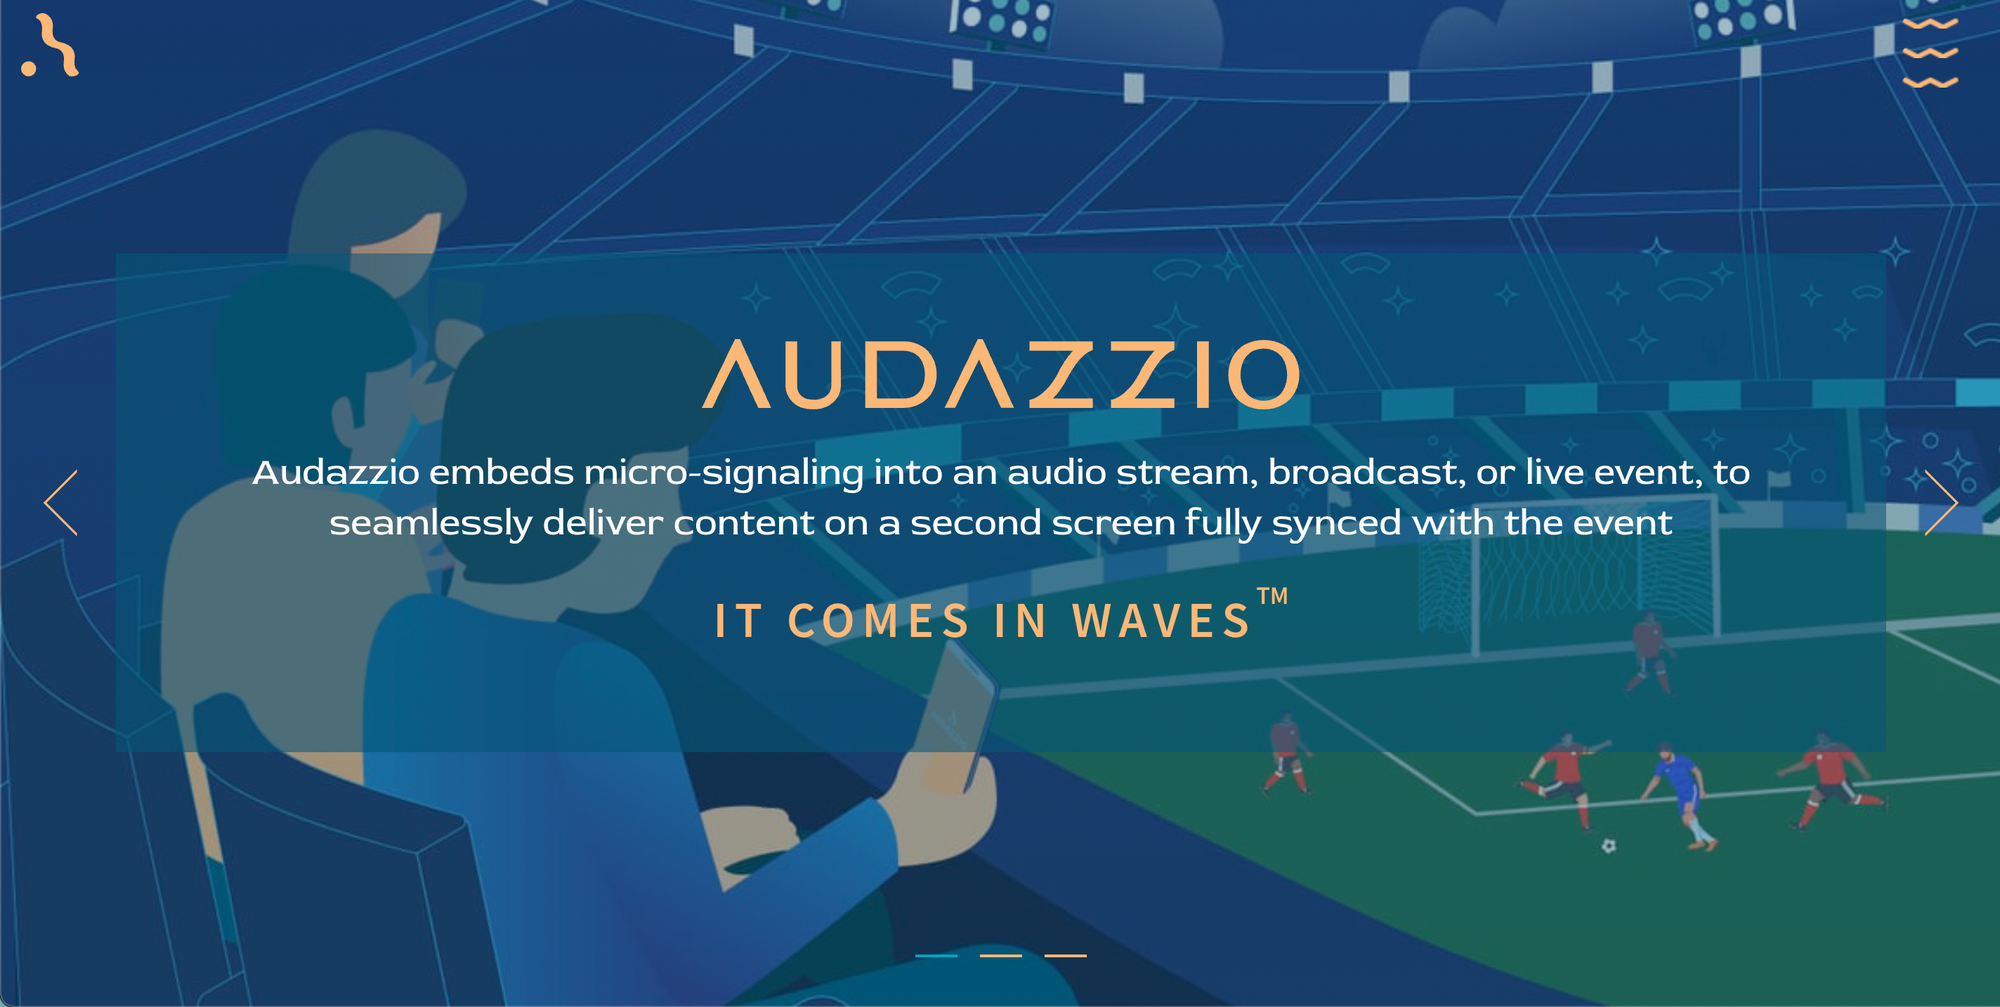 Website of Audazzio